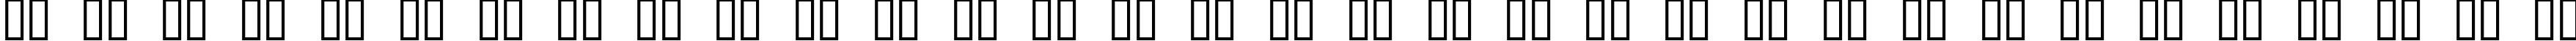 Пример написания русского алфавита шрифтом Occoluchi Minicaps